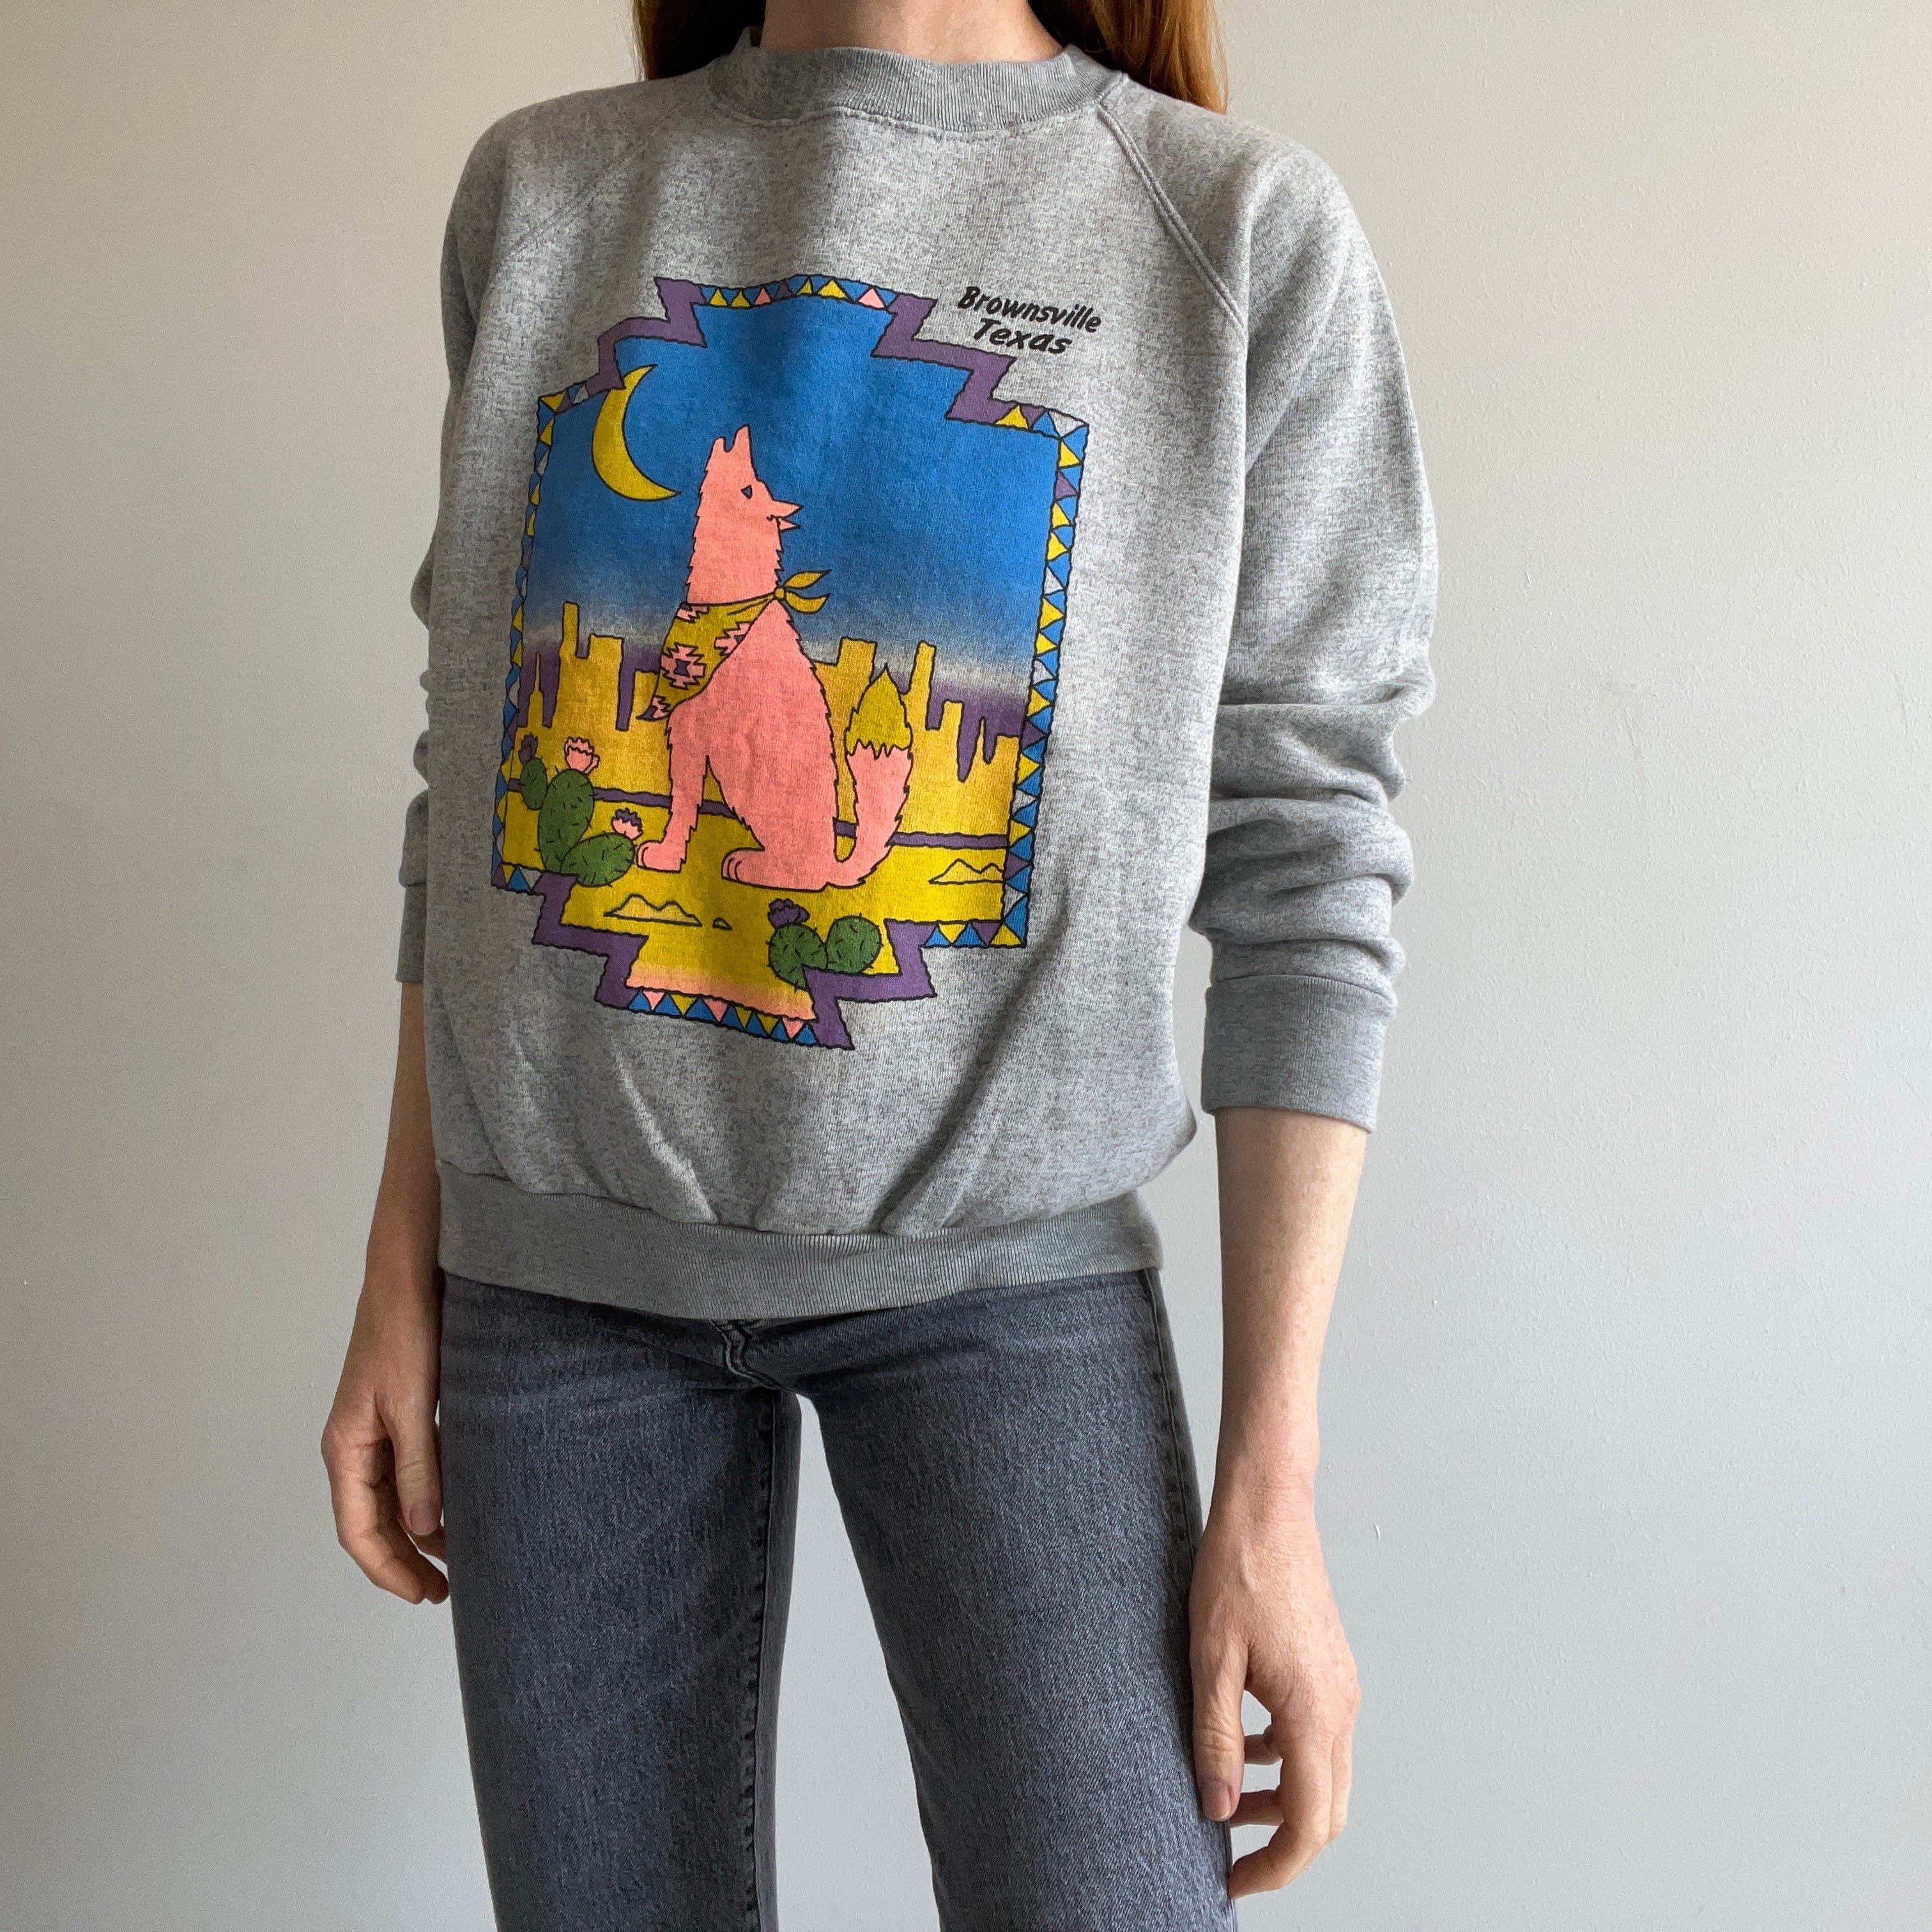 1980s Brownsville, Texas Sweatshirt